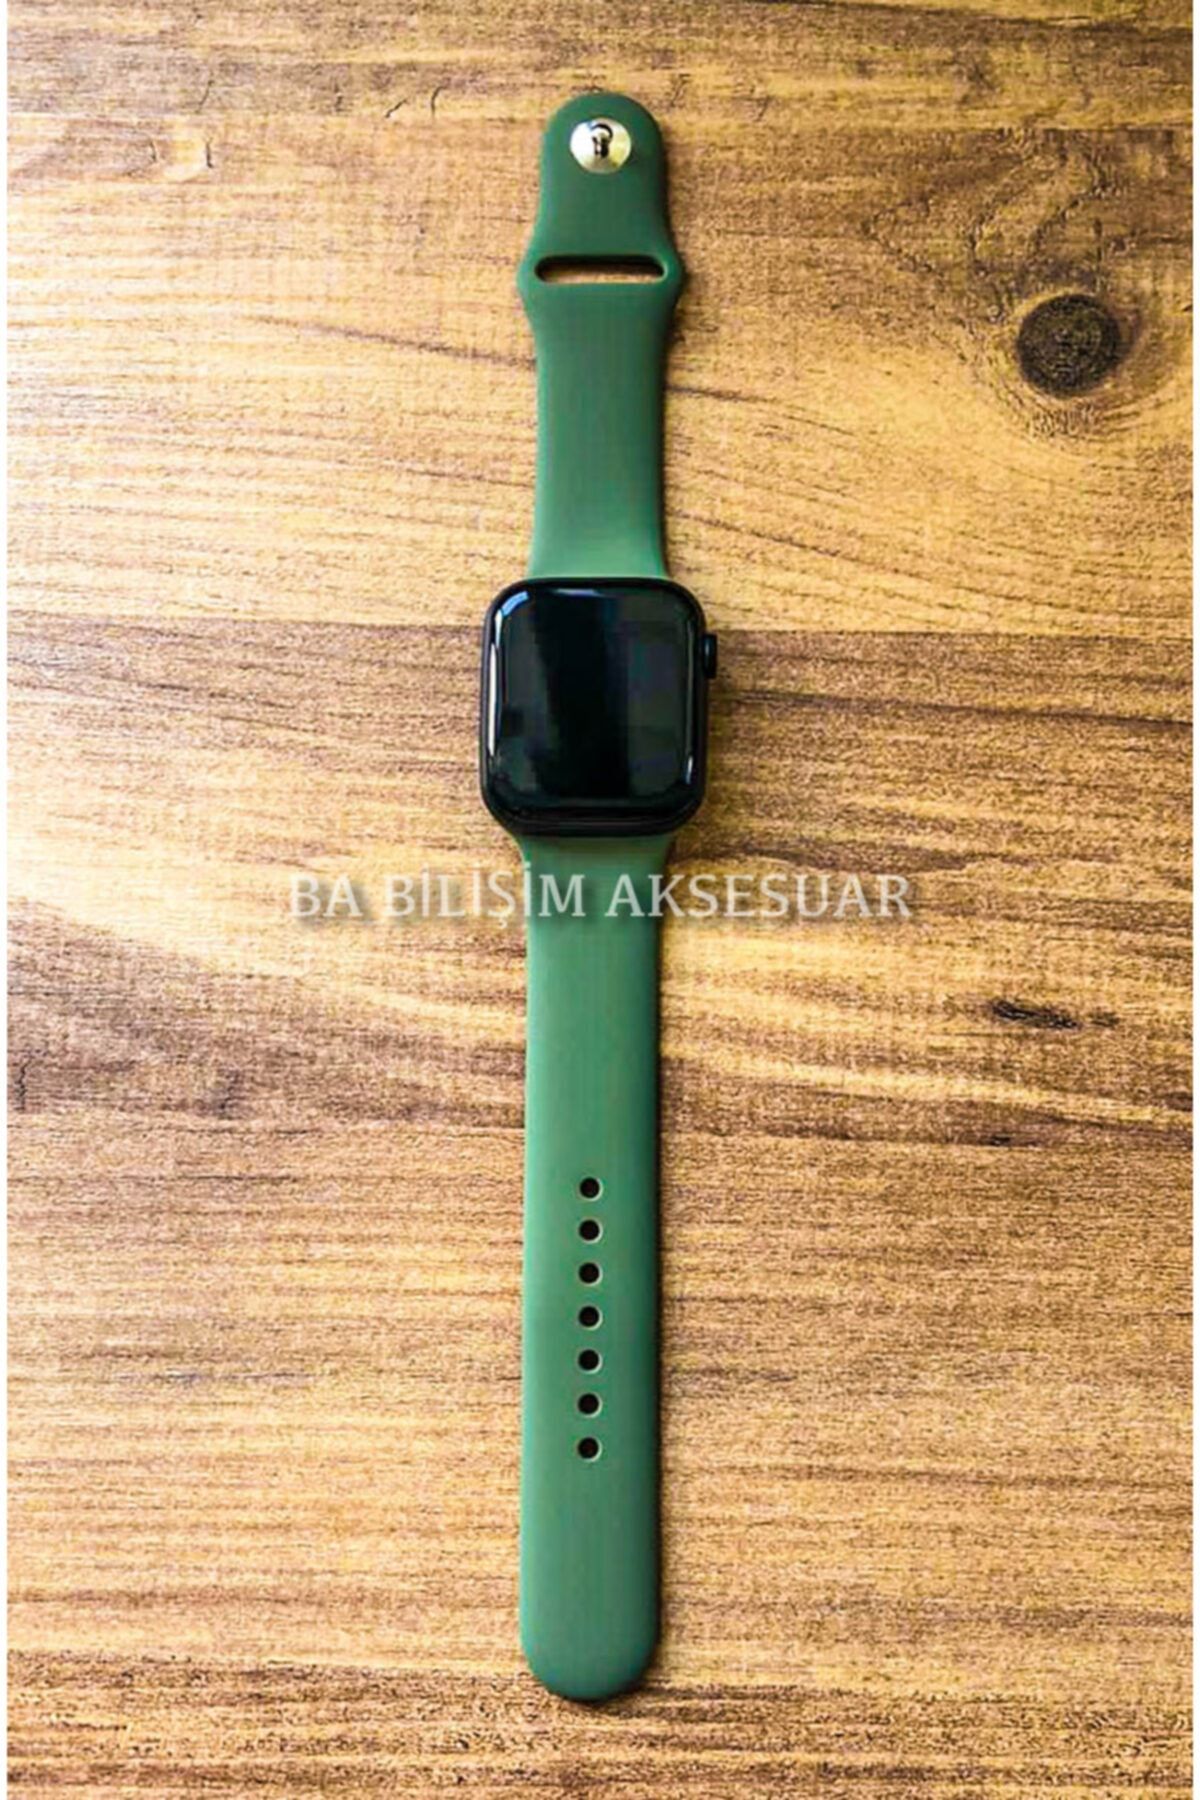 Bilişim Aksesuar Apple Watch 1 2 3 4 5 6 Se 38 - 40 Mm Spor Kordon Silikon Kayış Zeytin Yeşili S/m B